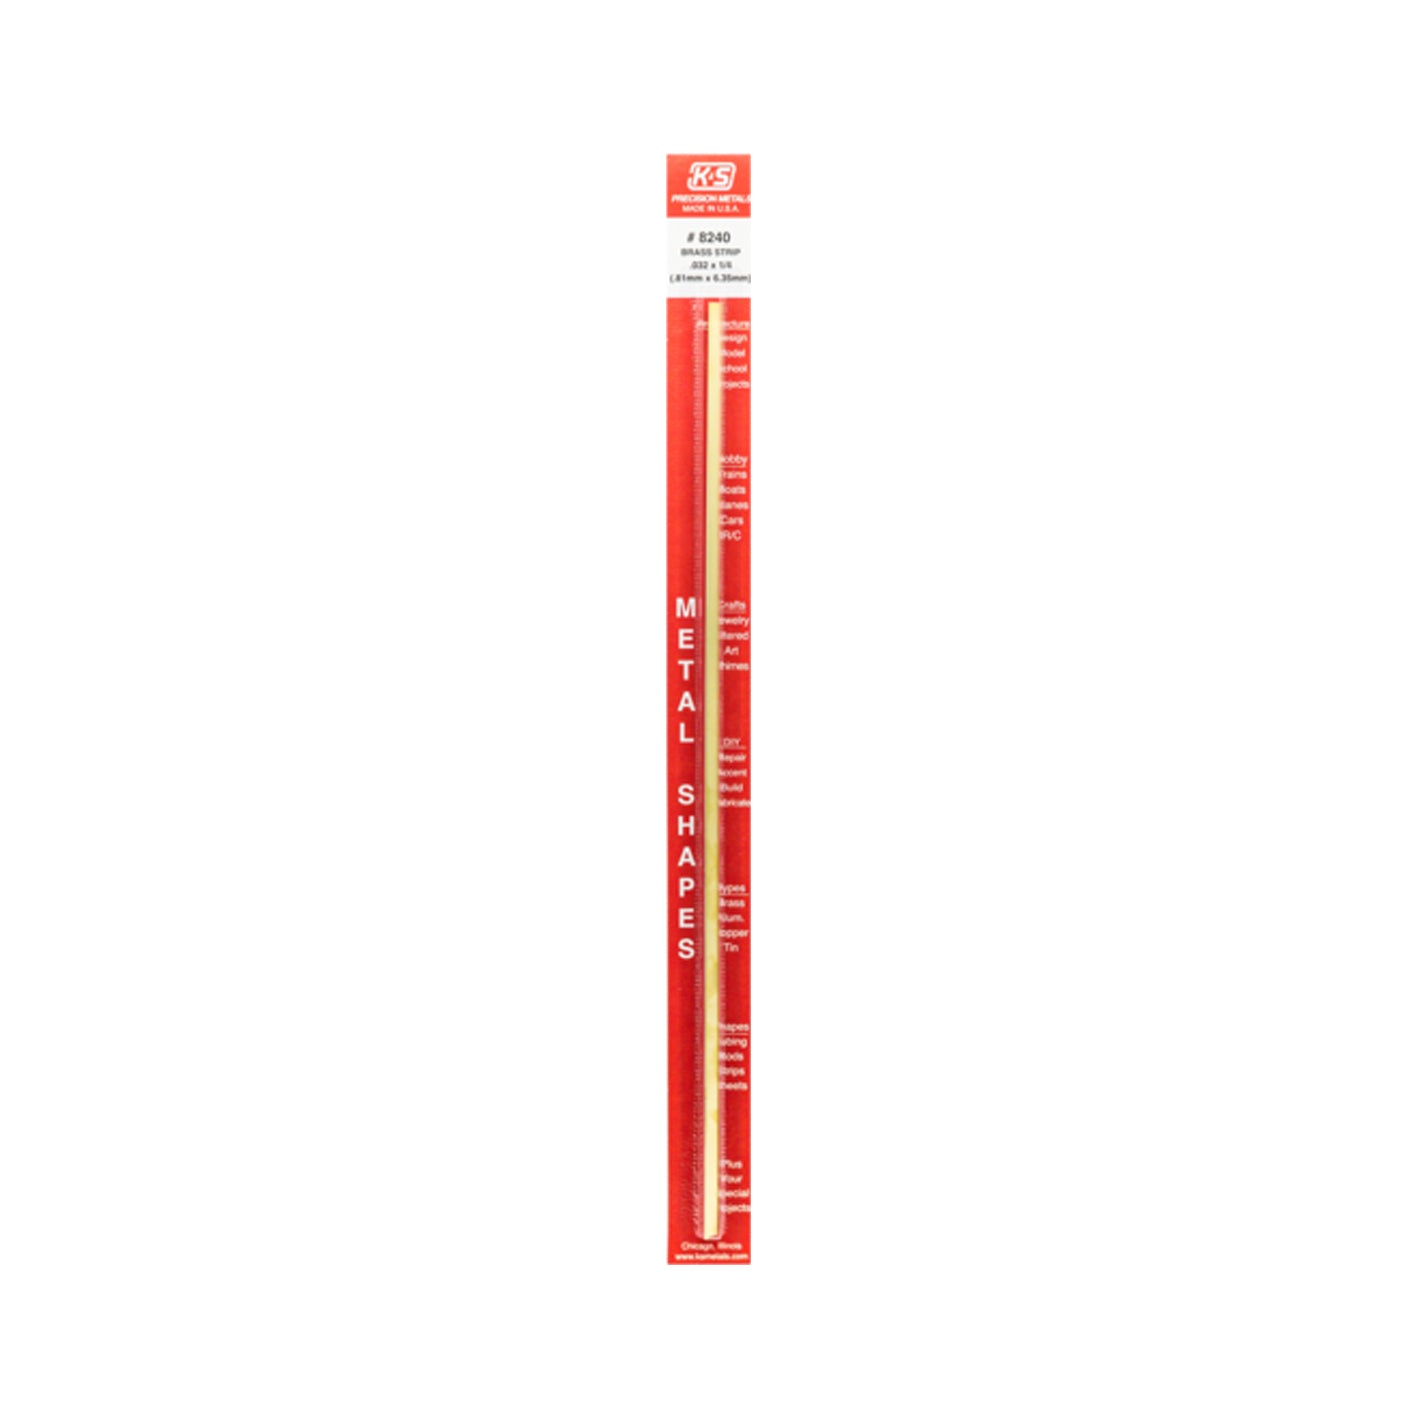 K&S™ Brass Strip: 0.032" Thick x 1/4" Wide x 12" Long (1 Piece)